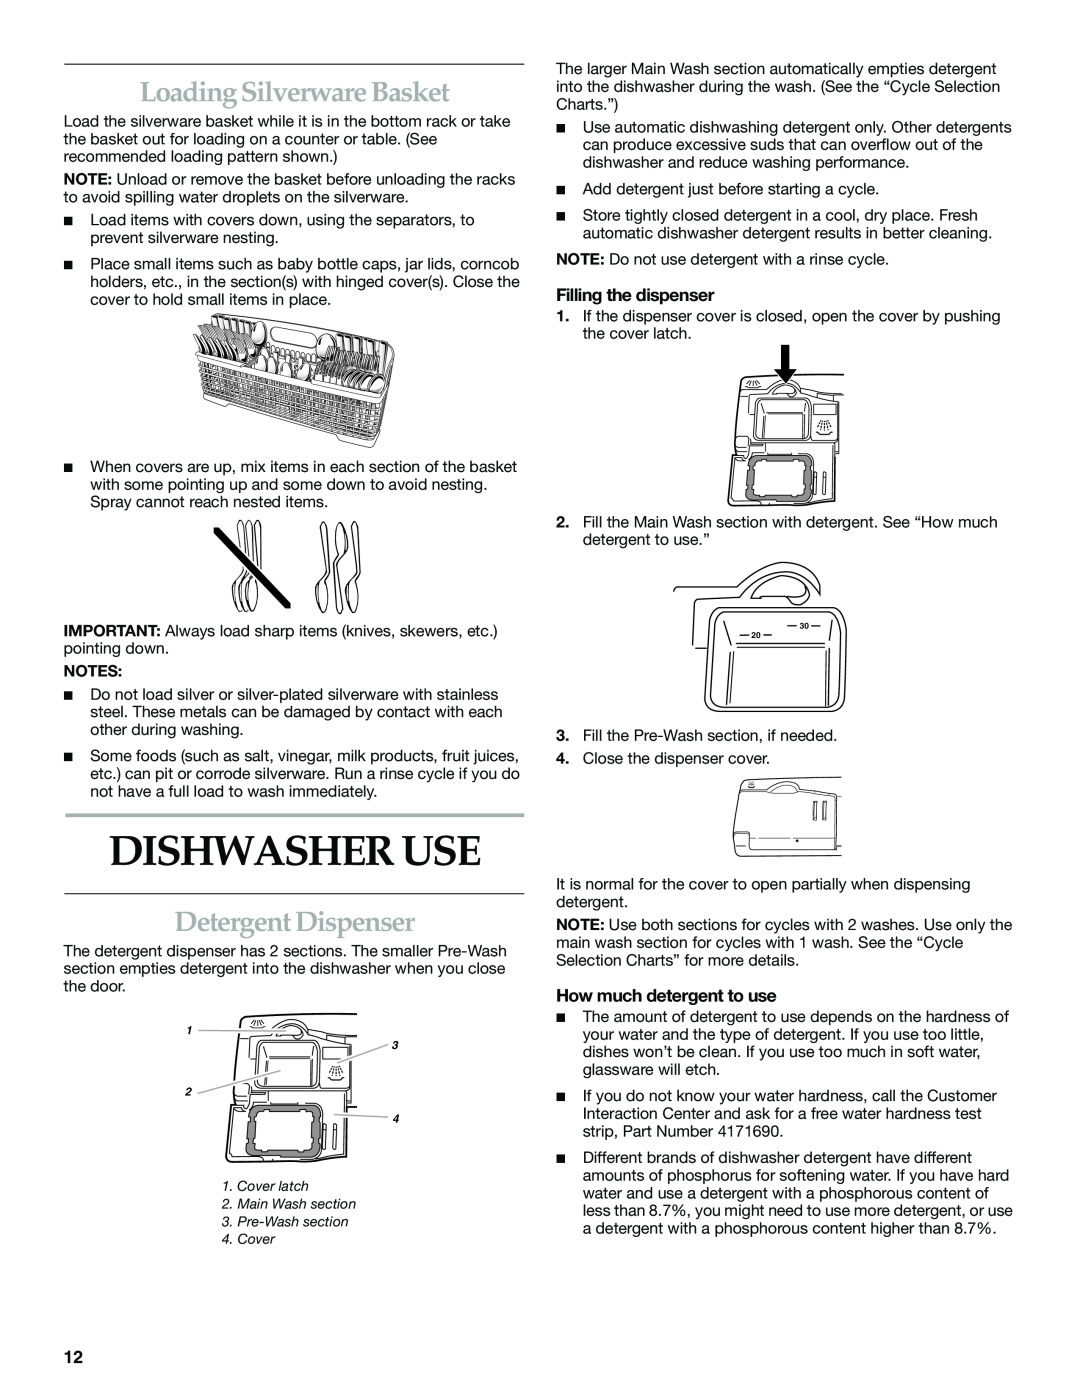 KitchenAid KUDS01DL manual Dishwasher Use, Loading Silverware Basket, Detergent Dispenser, Filling the dispenser 